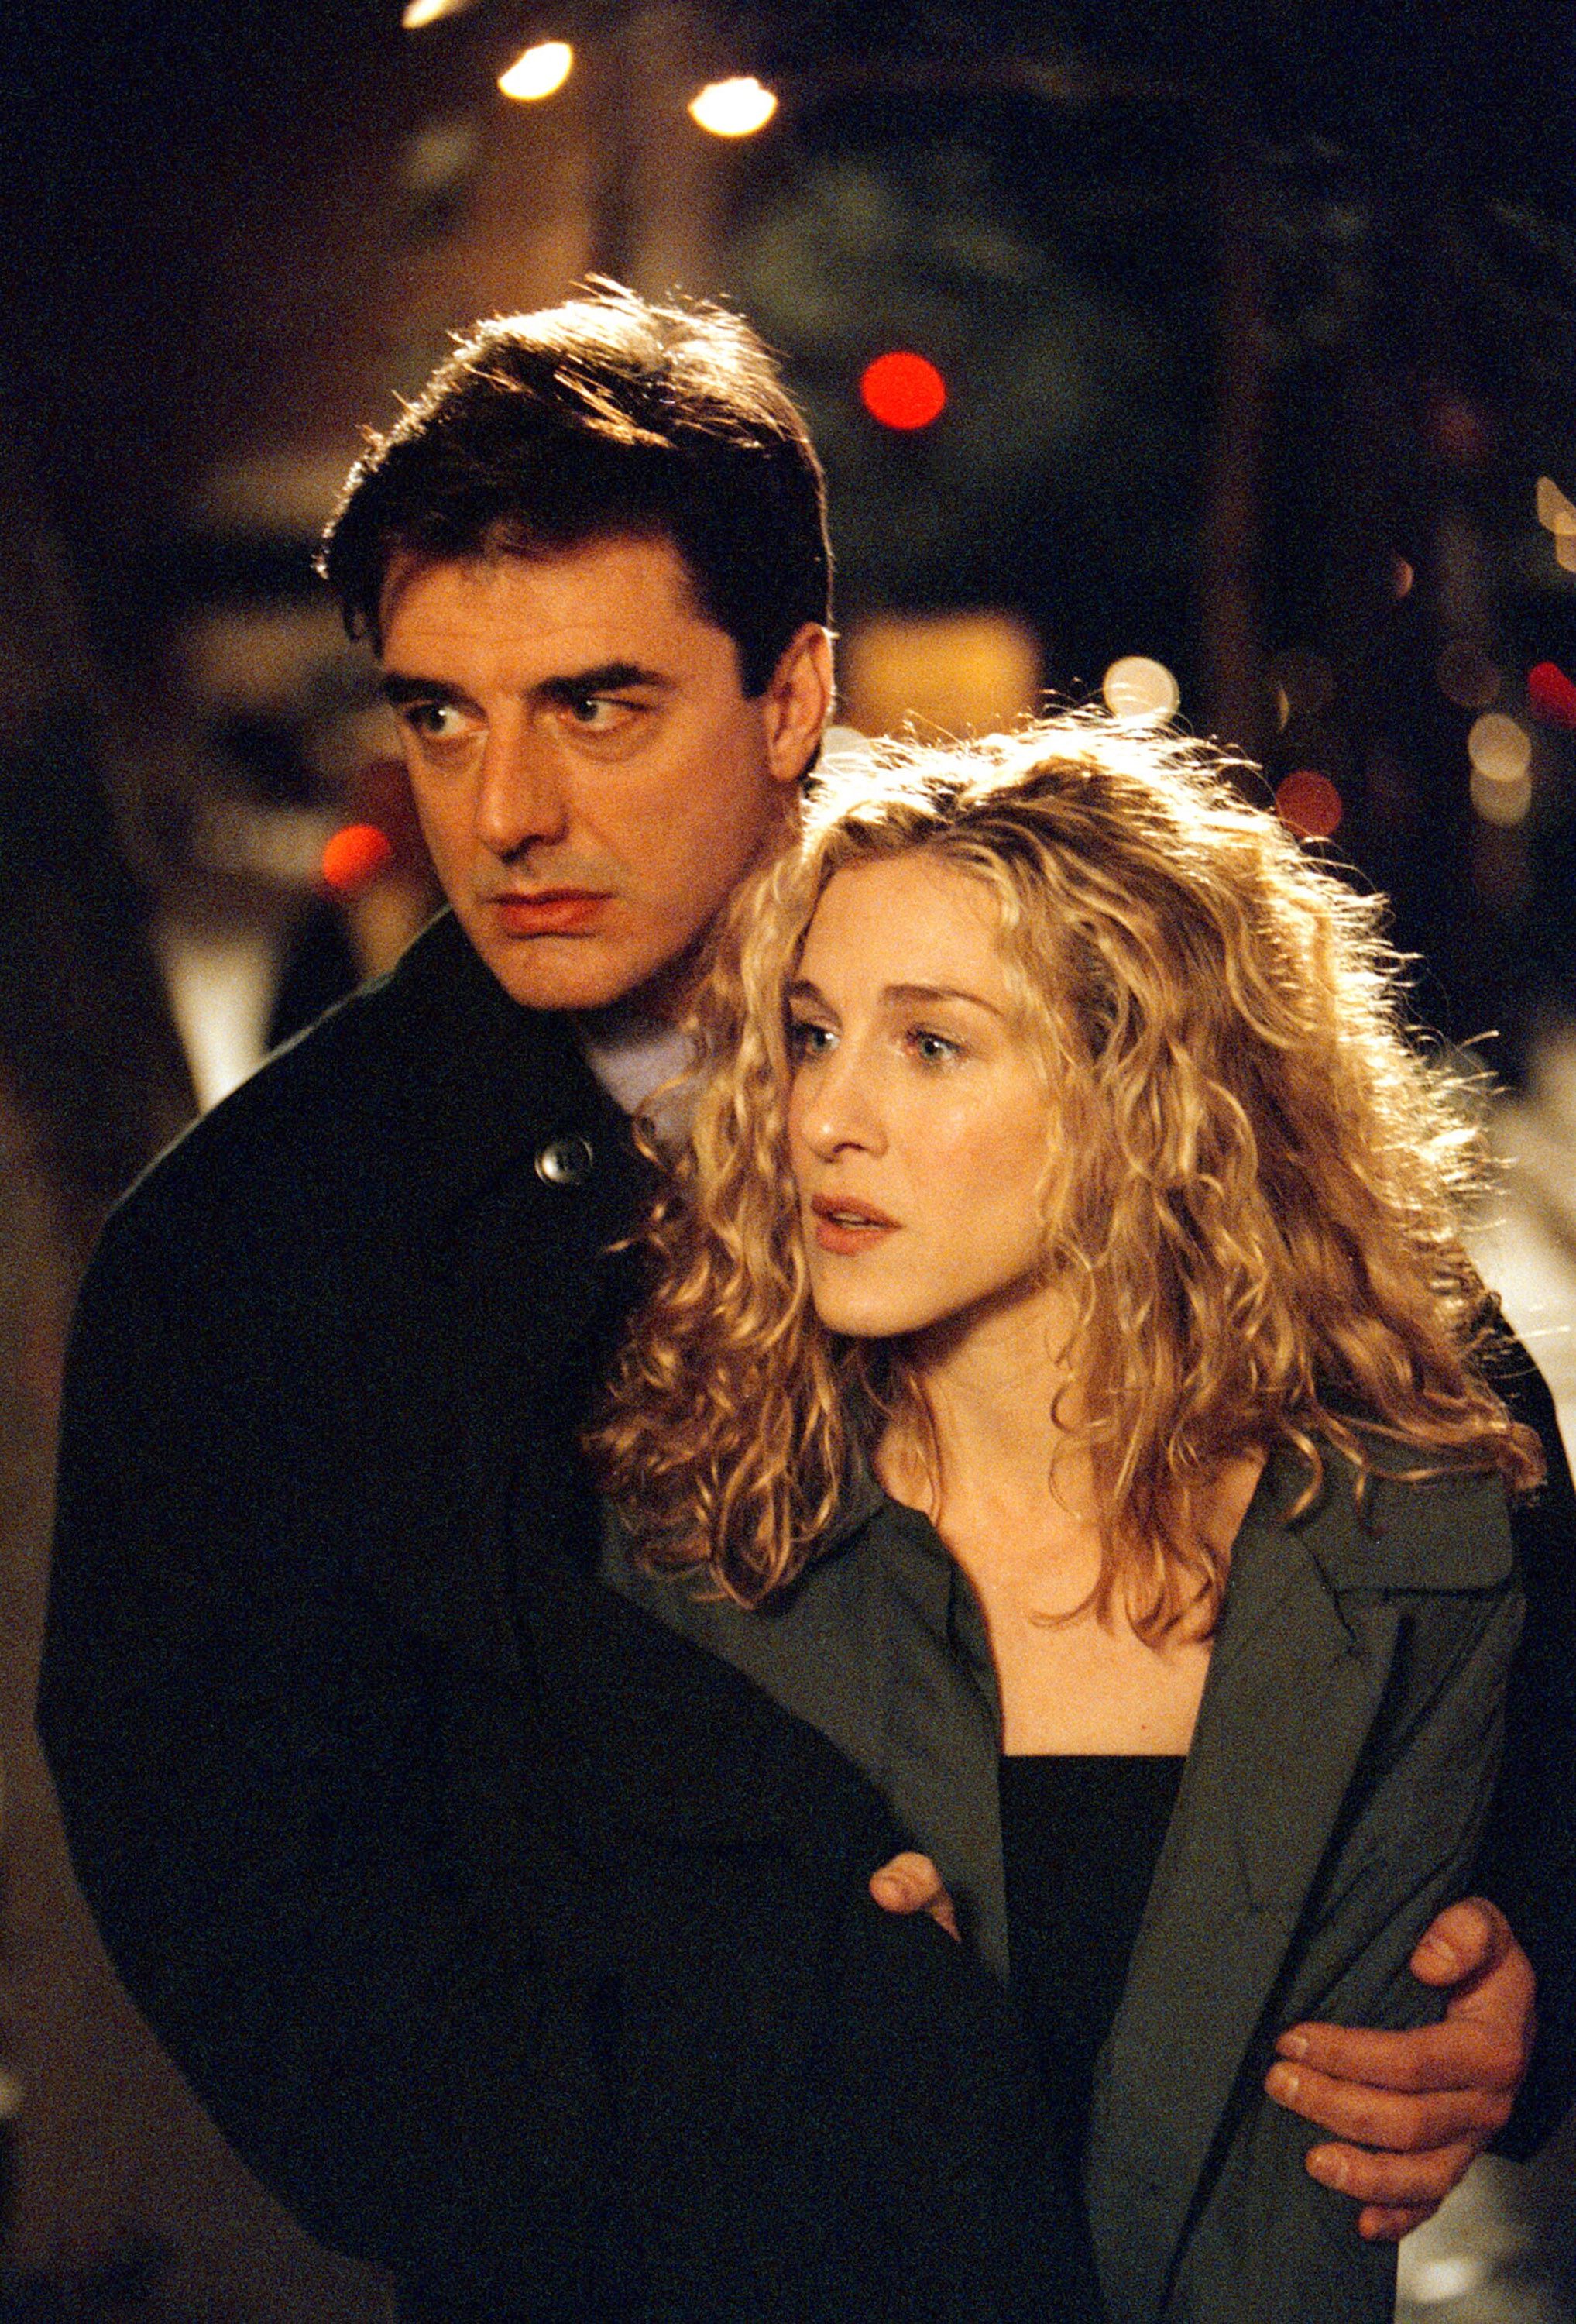 20 motivos por los que tener una cita era mucho mejor en los 90